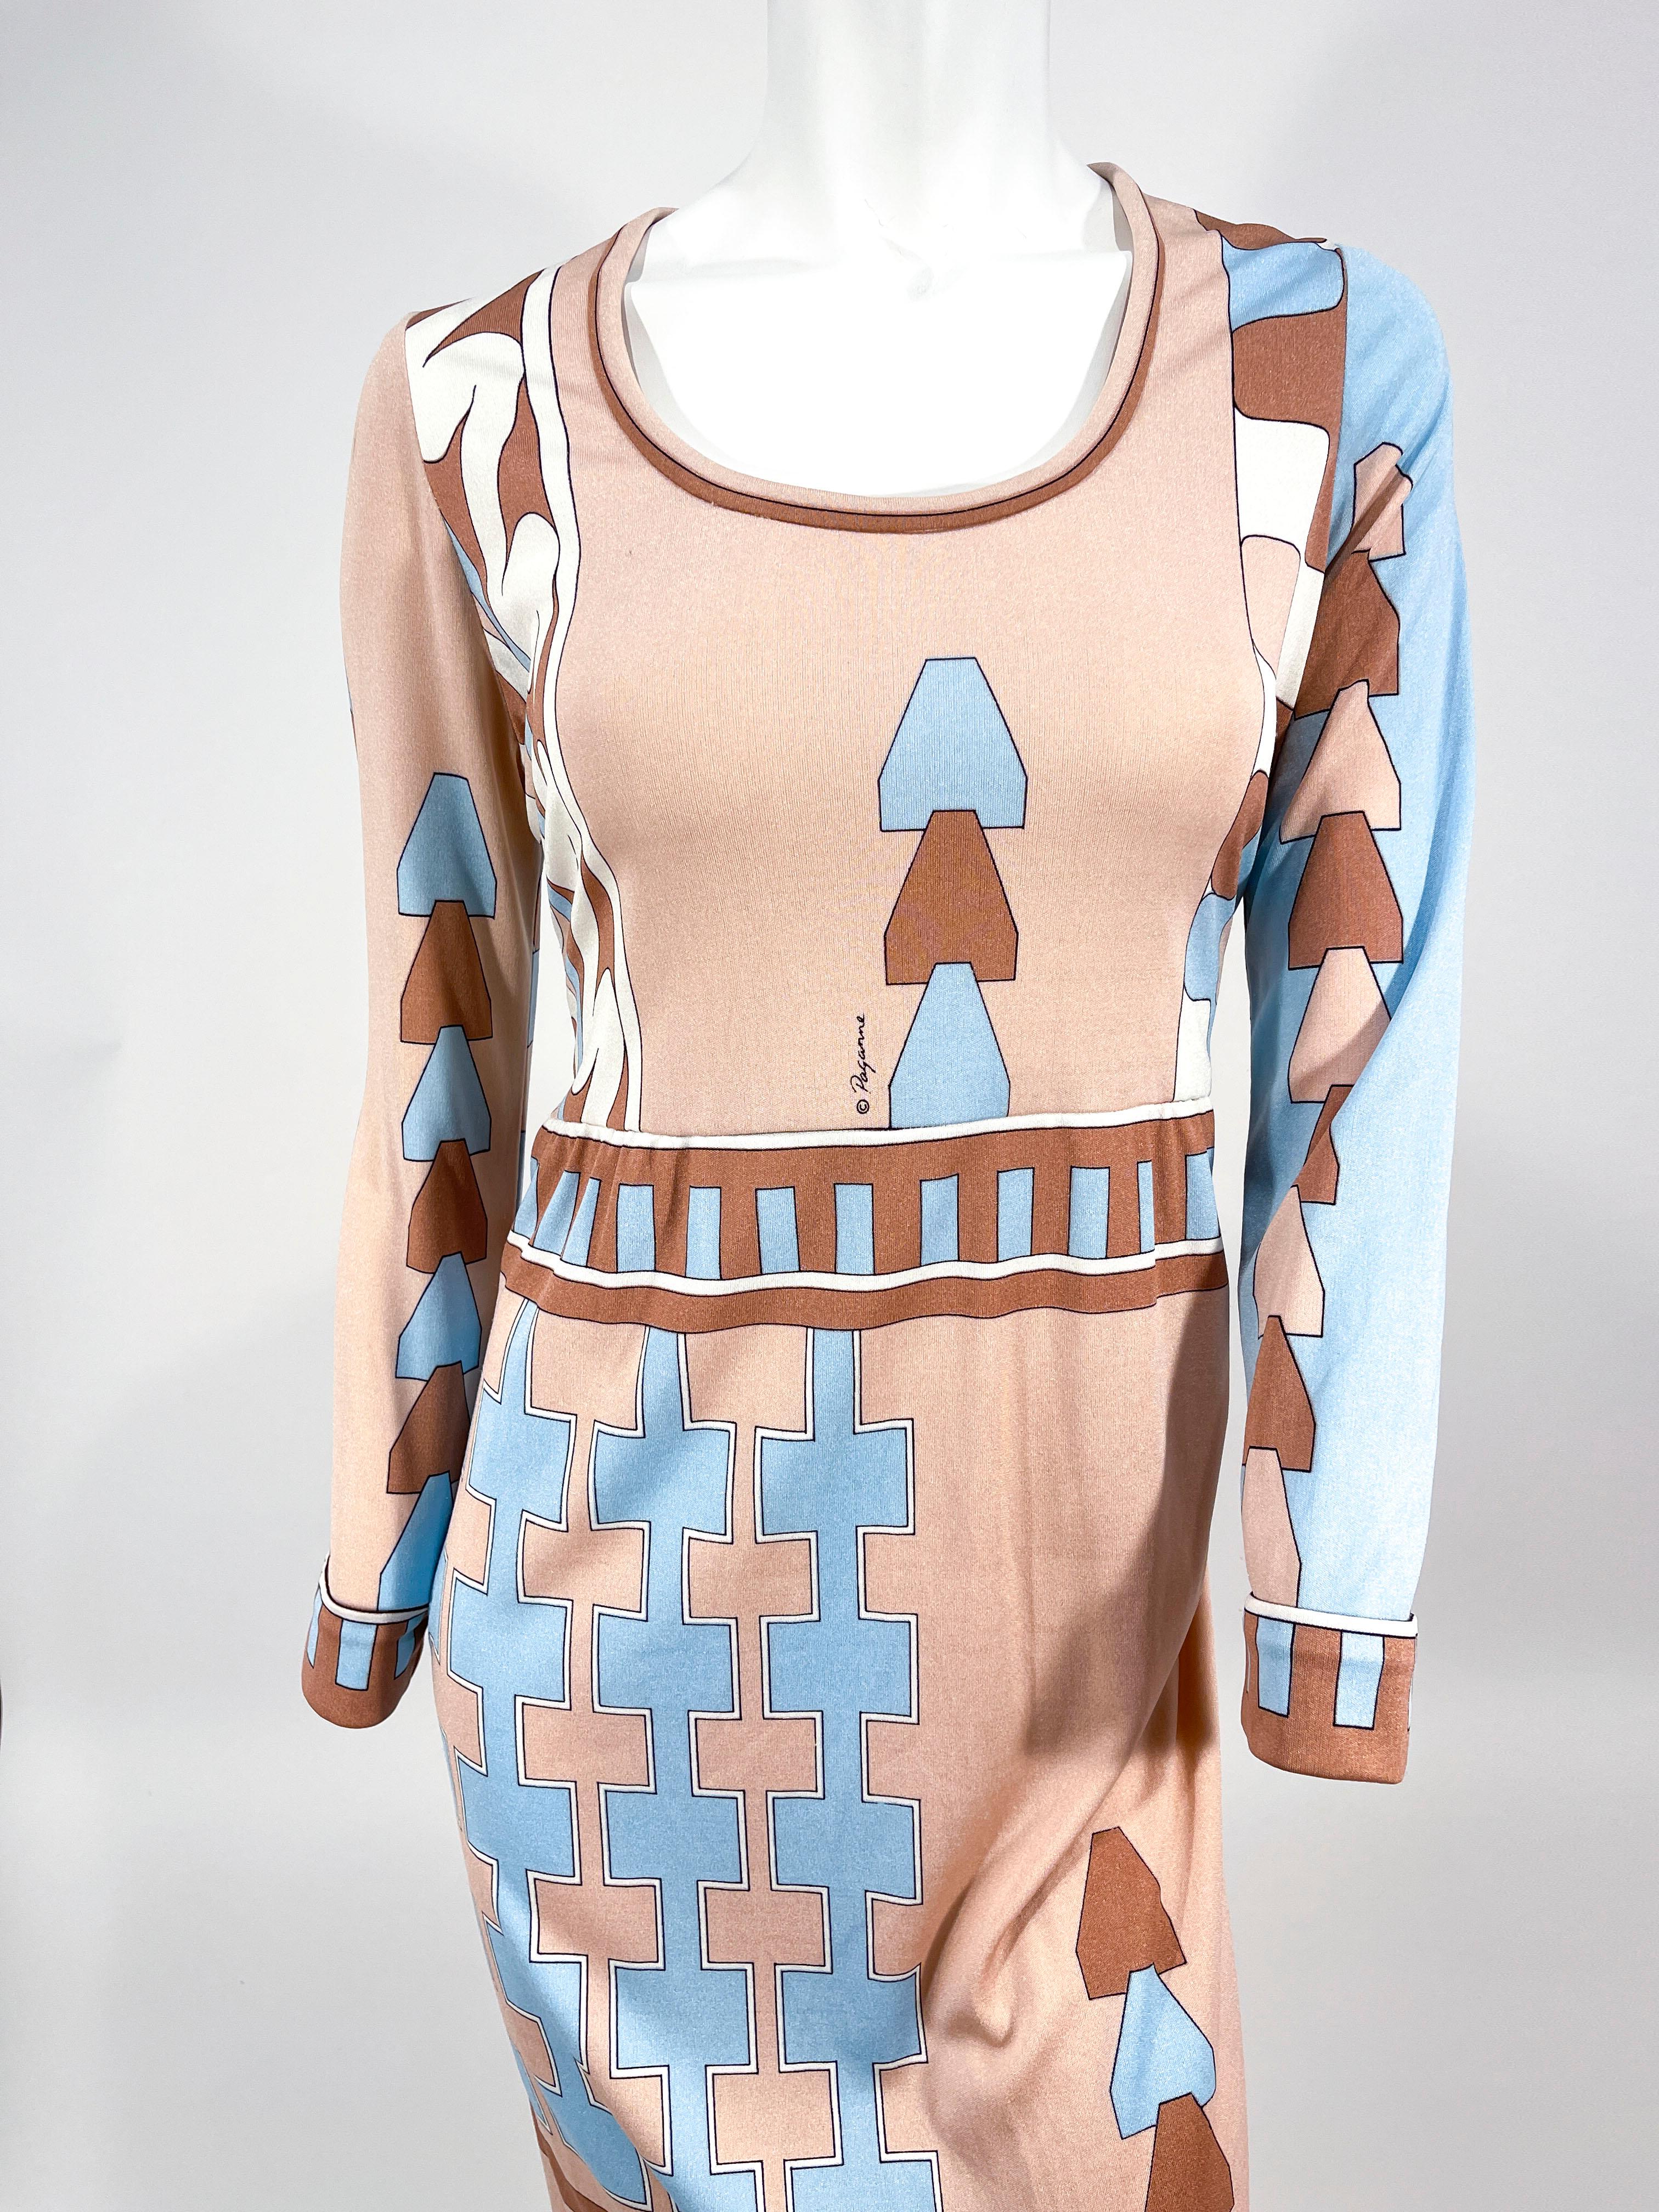 Robe en jersey de soie Paganne des années 1970, avec un imprimé géométrique abstrait dans les tons mauve, beige et bleu clair. Les manches, l'encolure bateau, l'ourlet et la taille sont imprimés en bordures. Ce vêtement n'est pas doublé et se ferme